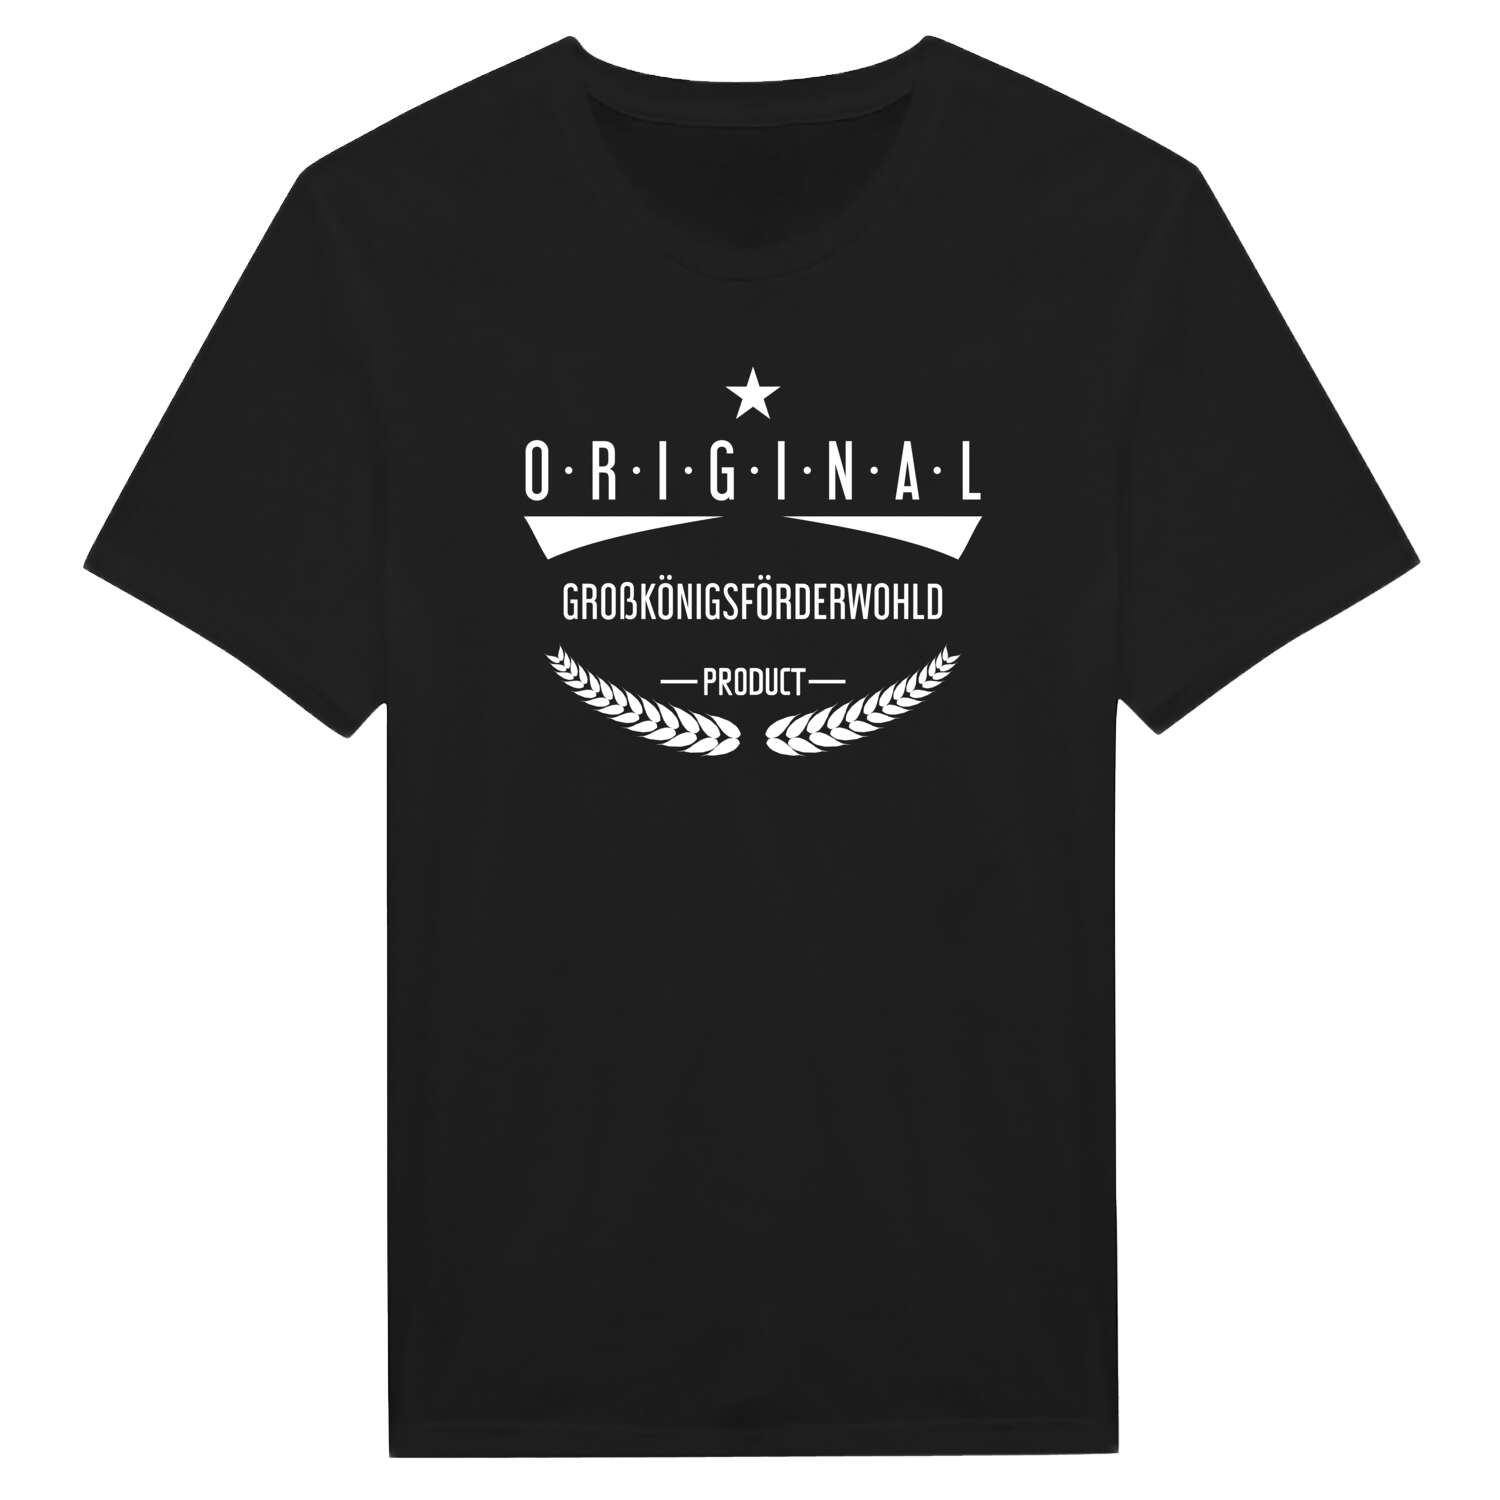 Großkönigsförderwohld T-Shirt »Original Product«